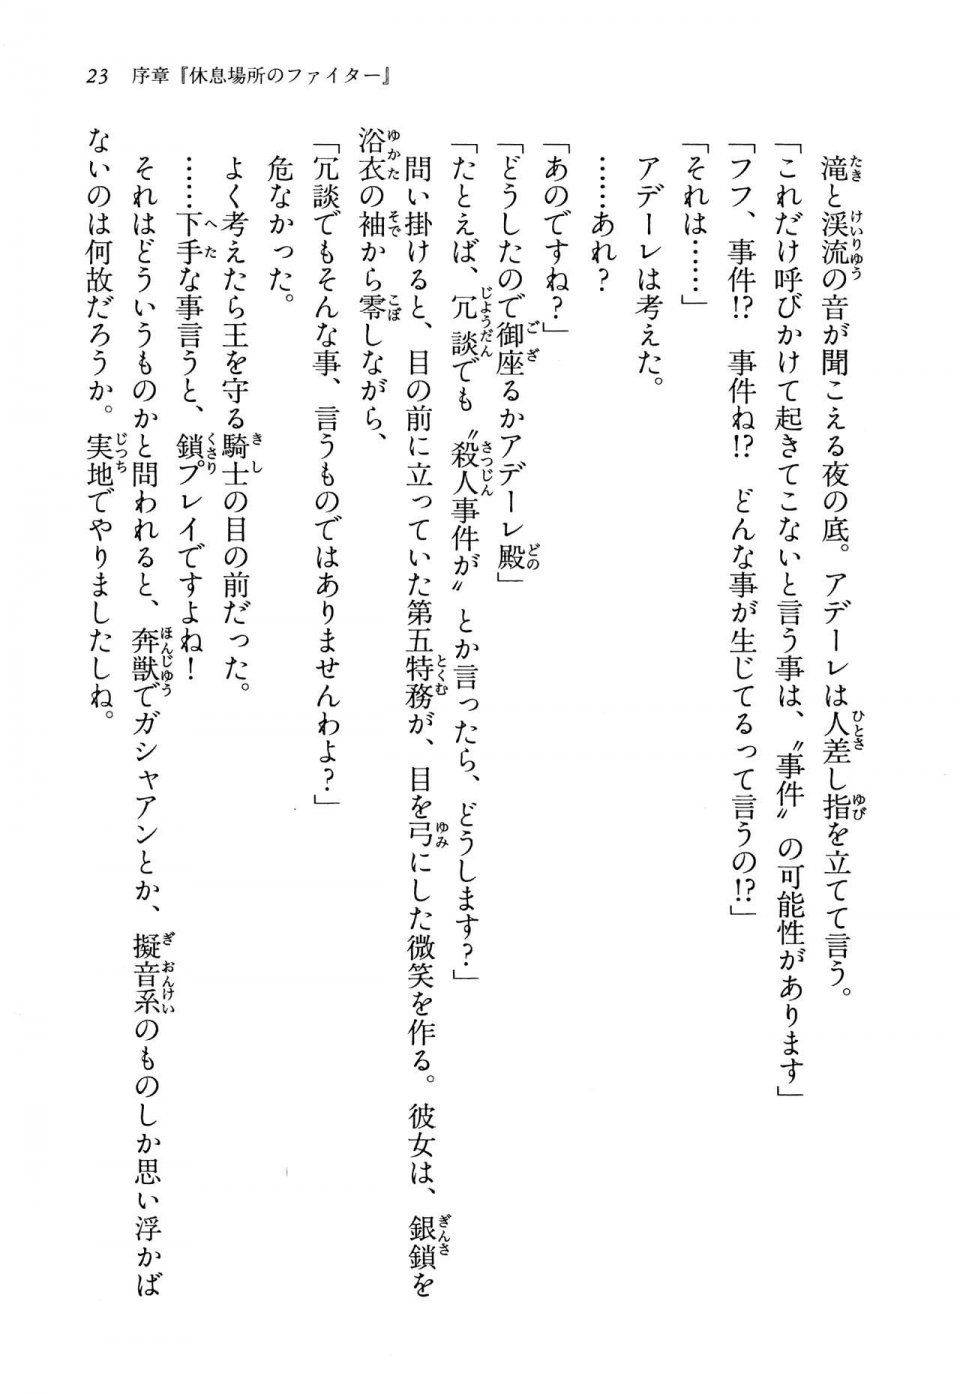 Kyoukai Senjou no Horizon LN Vol 13(6A) - Photo #23